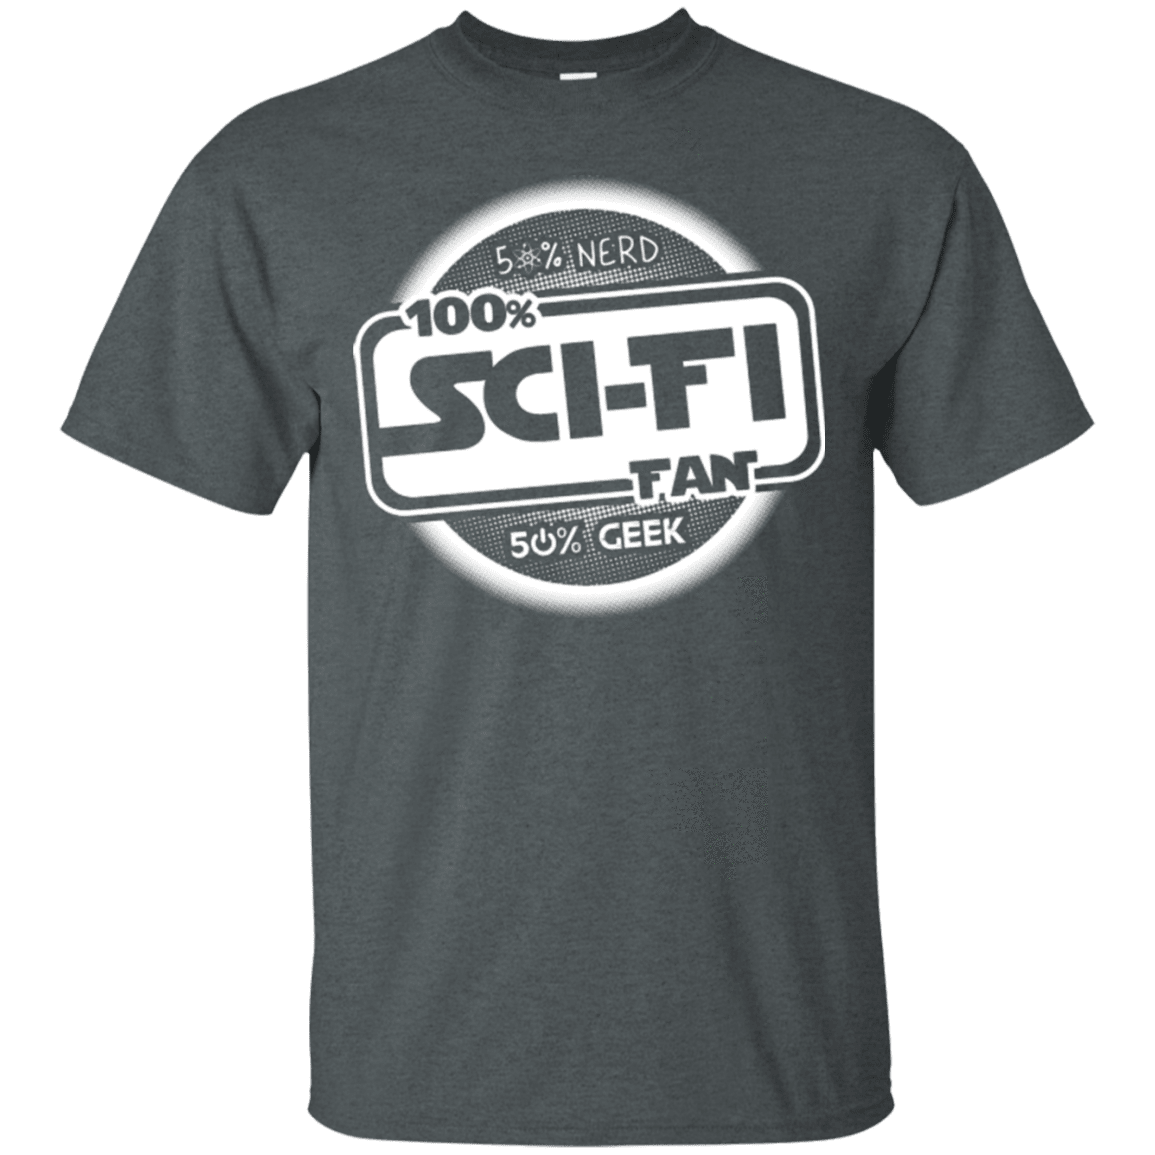 T-Shirts Dark Heather / Small 100 Percent Sci-fi T-Shirt